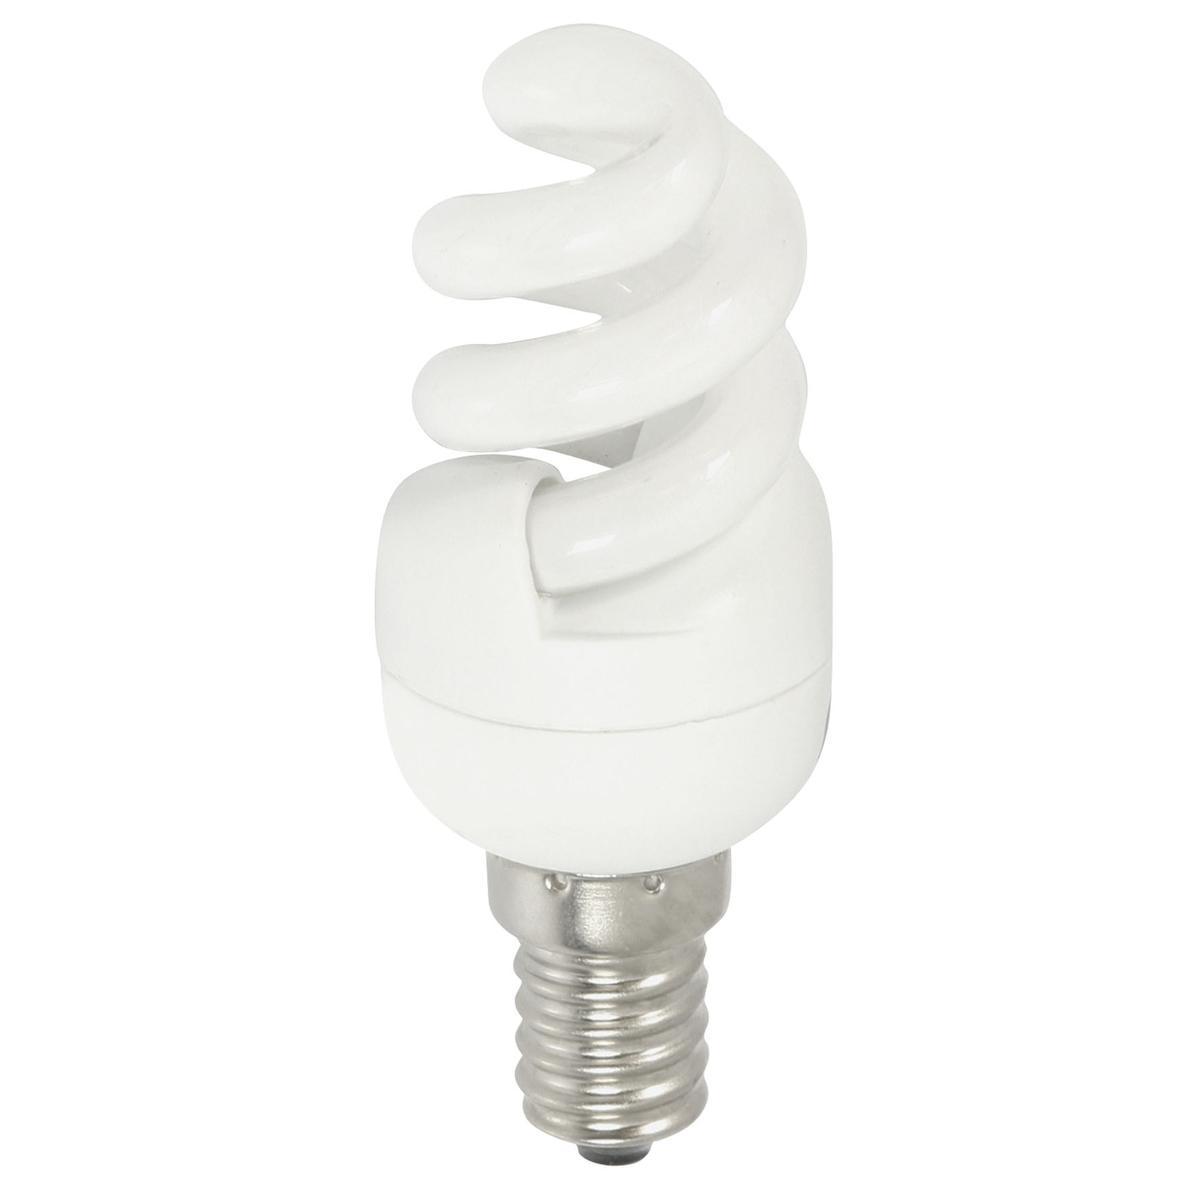 Ampoule mini-torsadée à économie d'énergie E14 - 9 x 3.2 x 3.2 cm - Multicolore